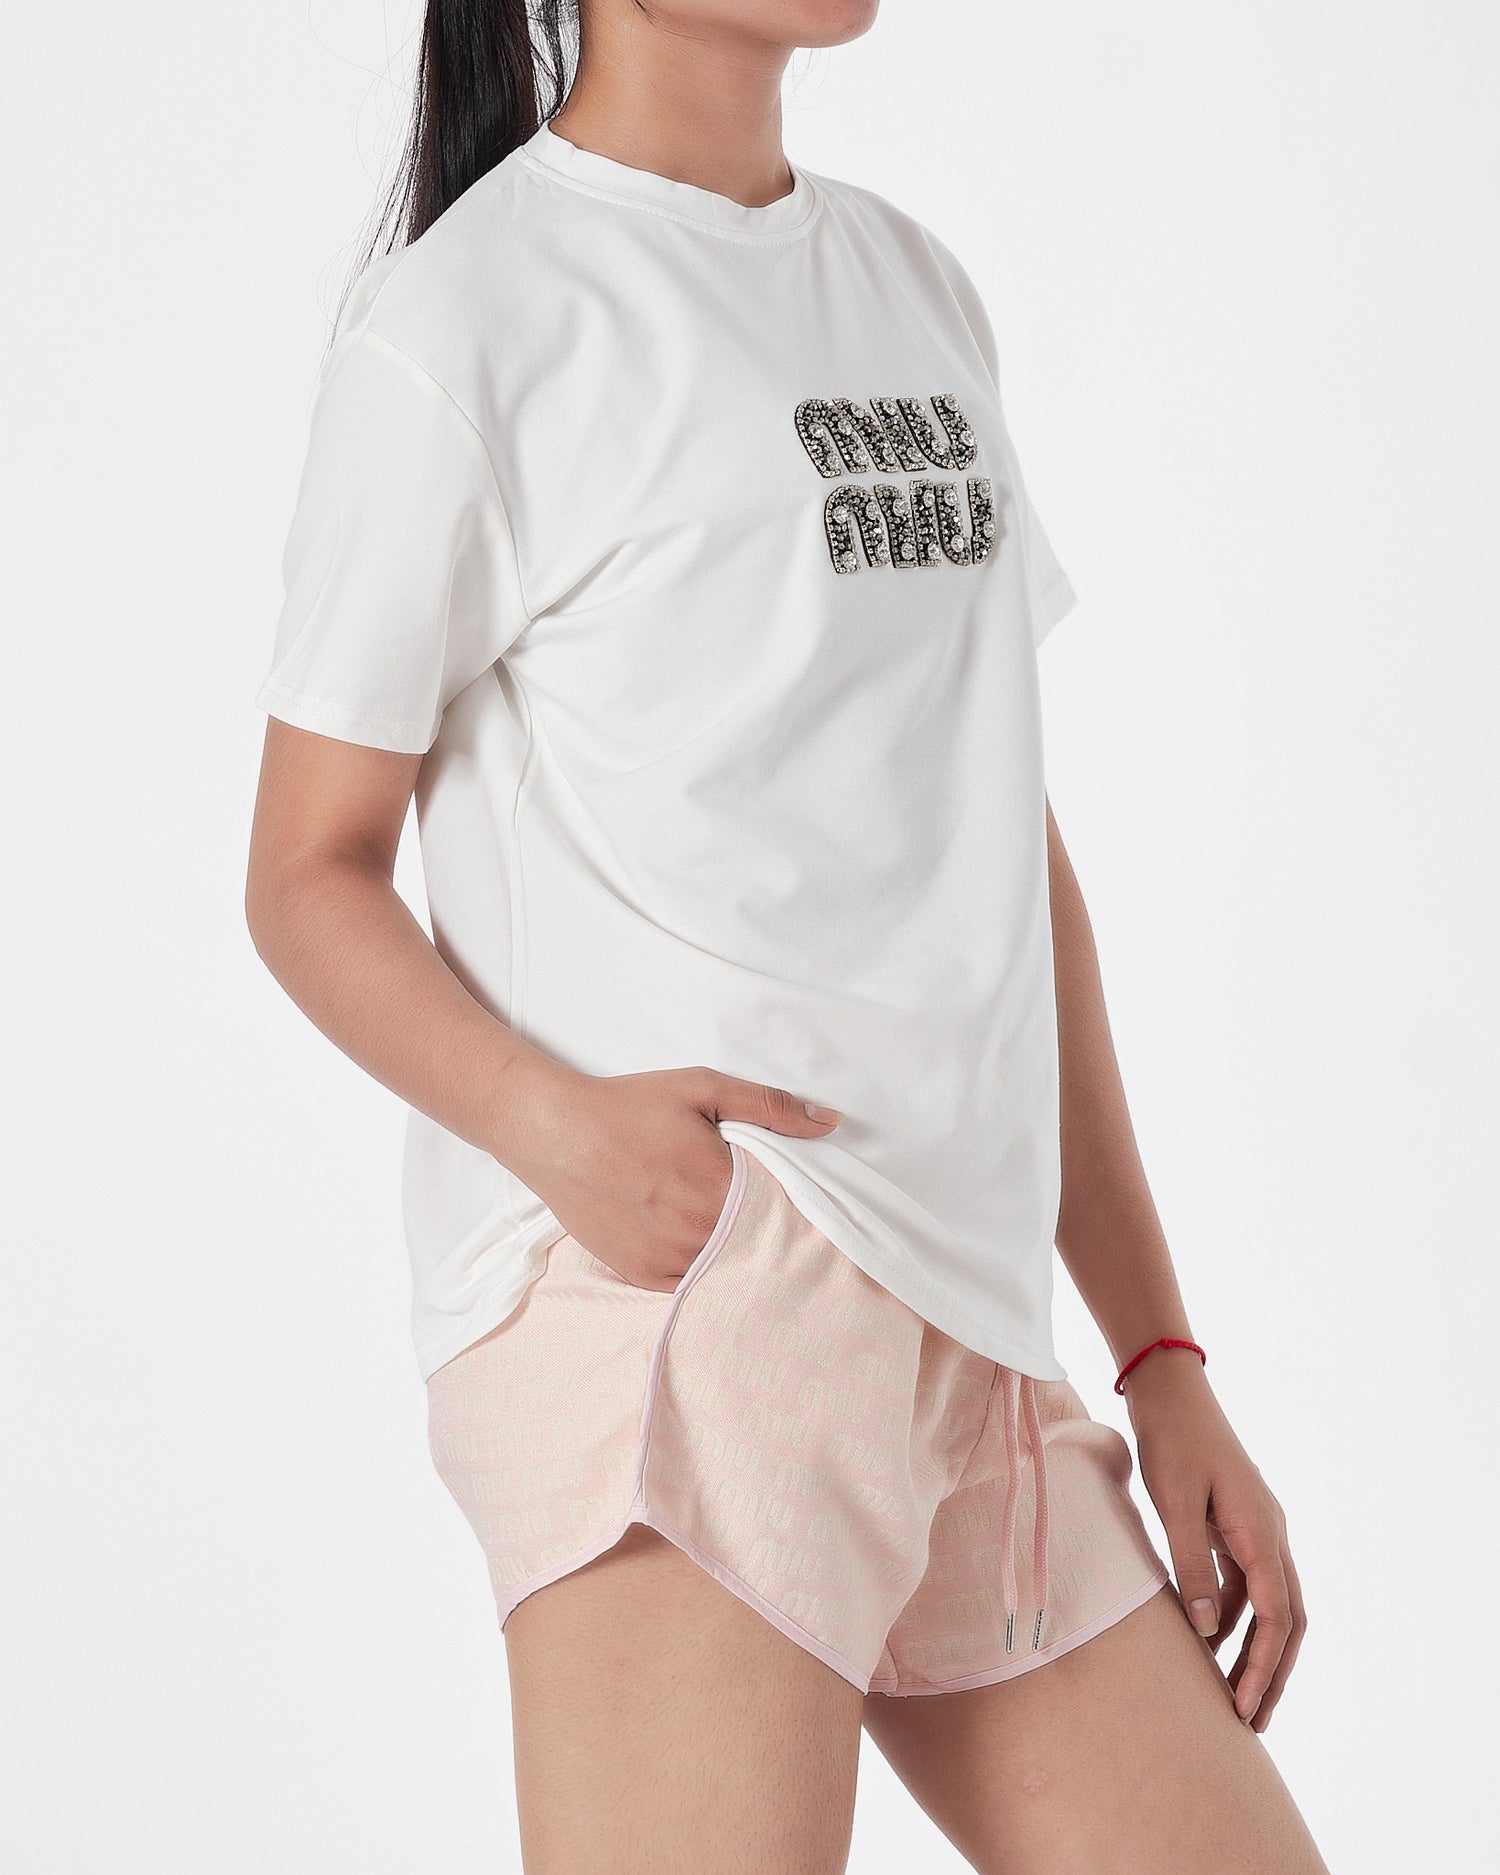 MIU MIU Lady White T-Shirt + Shorts 2 Piece Outfit 20.90